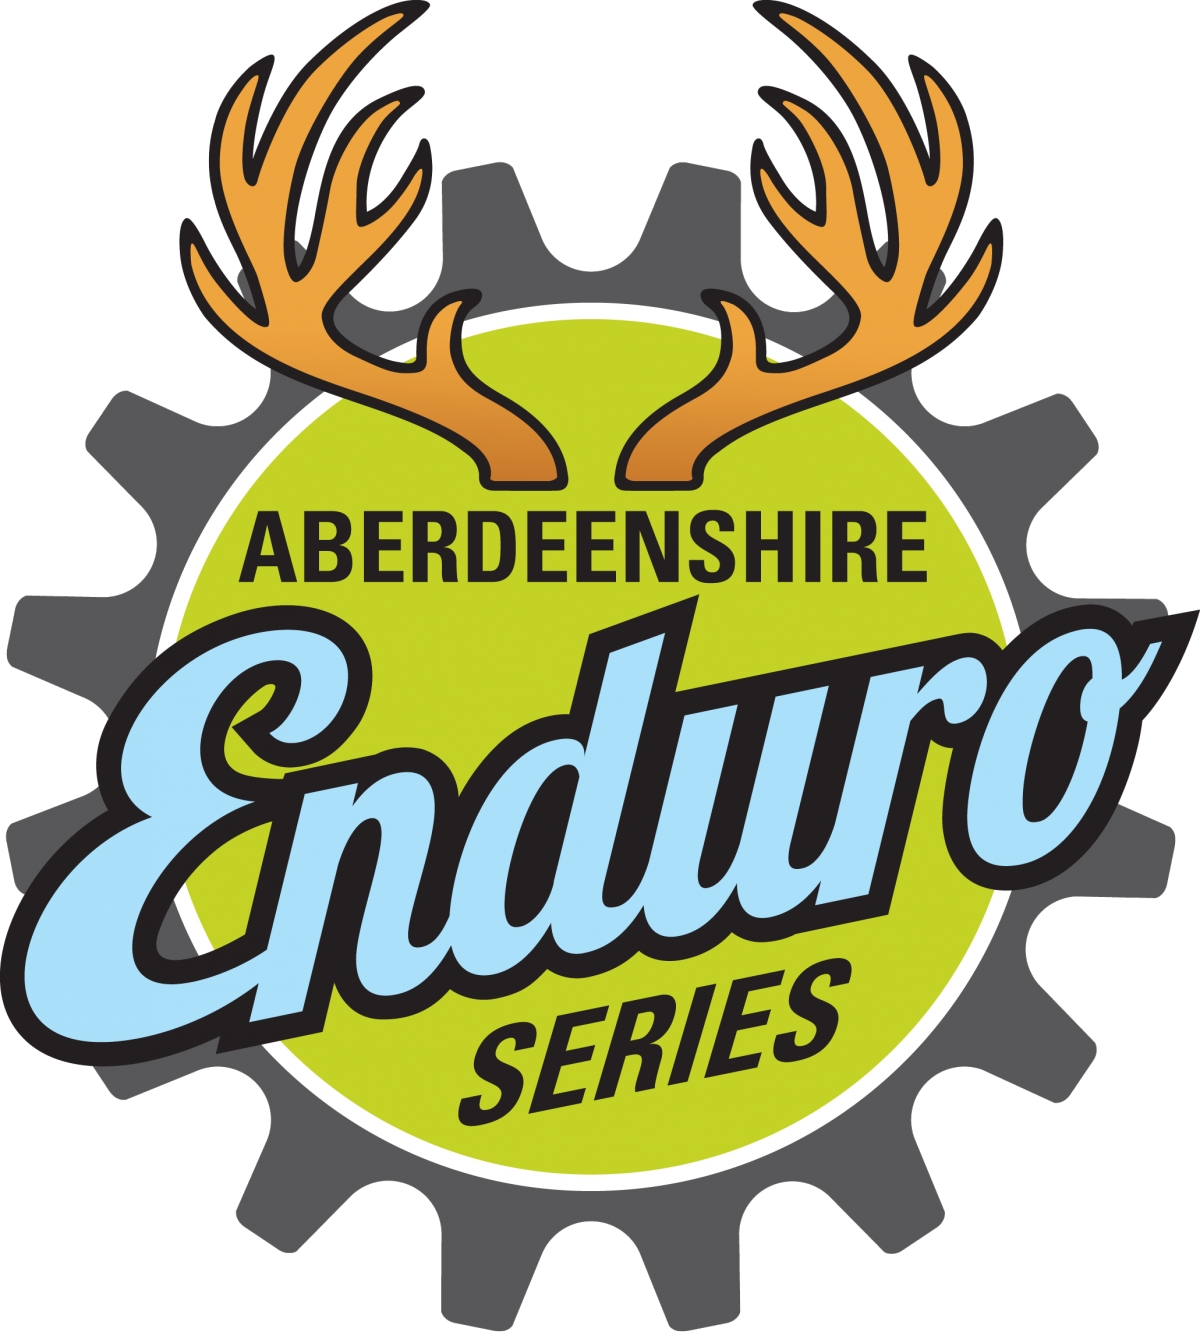 Drumtochty Enduro - Aberdeenshire Enduro Series 2019